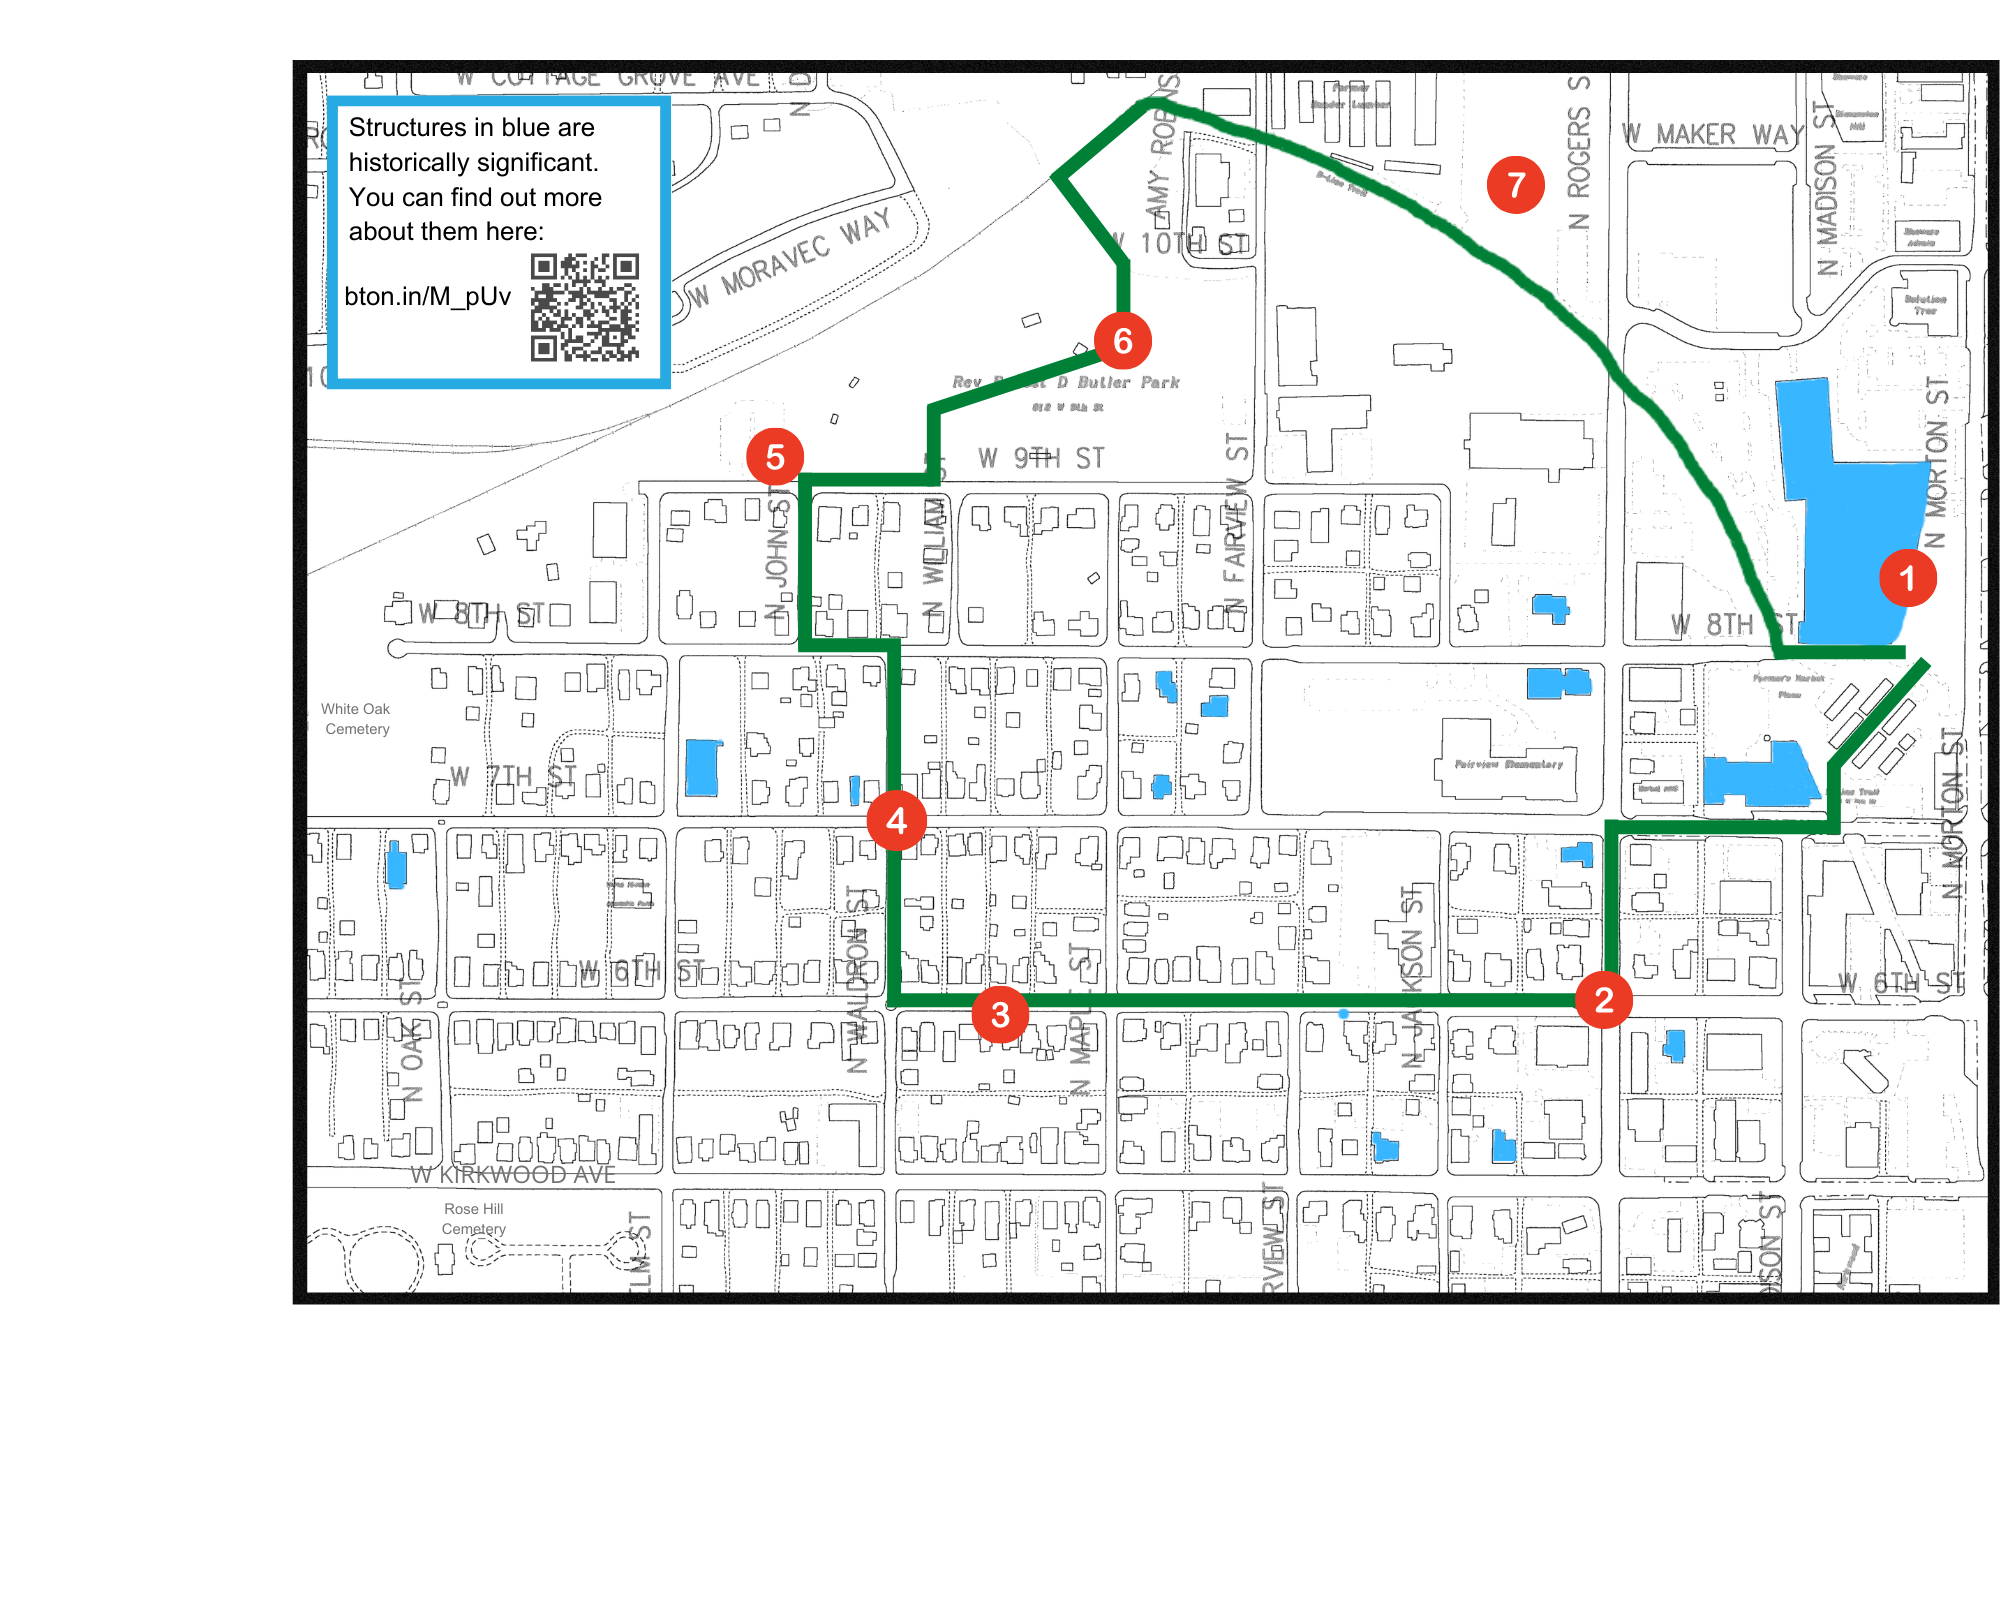 NWS map displaying walking tour route